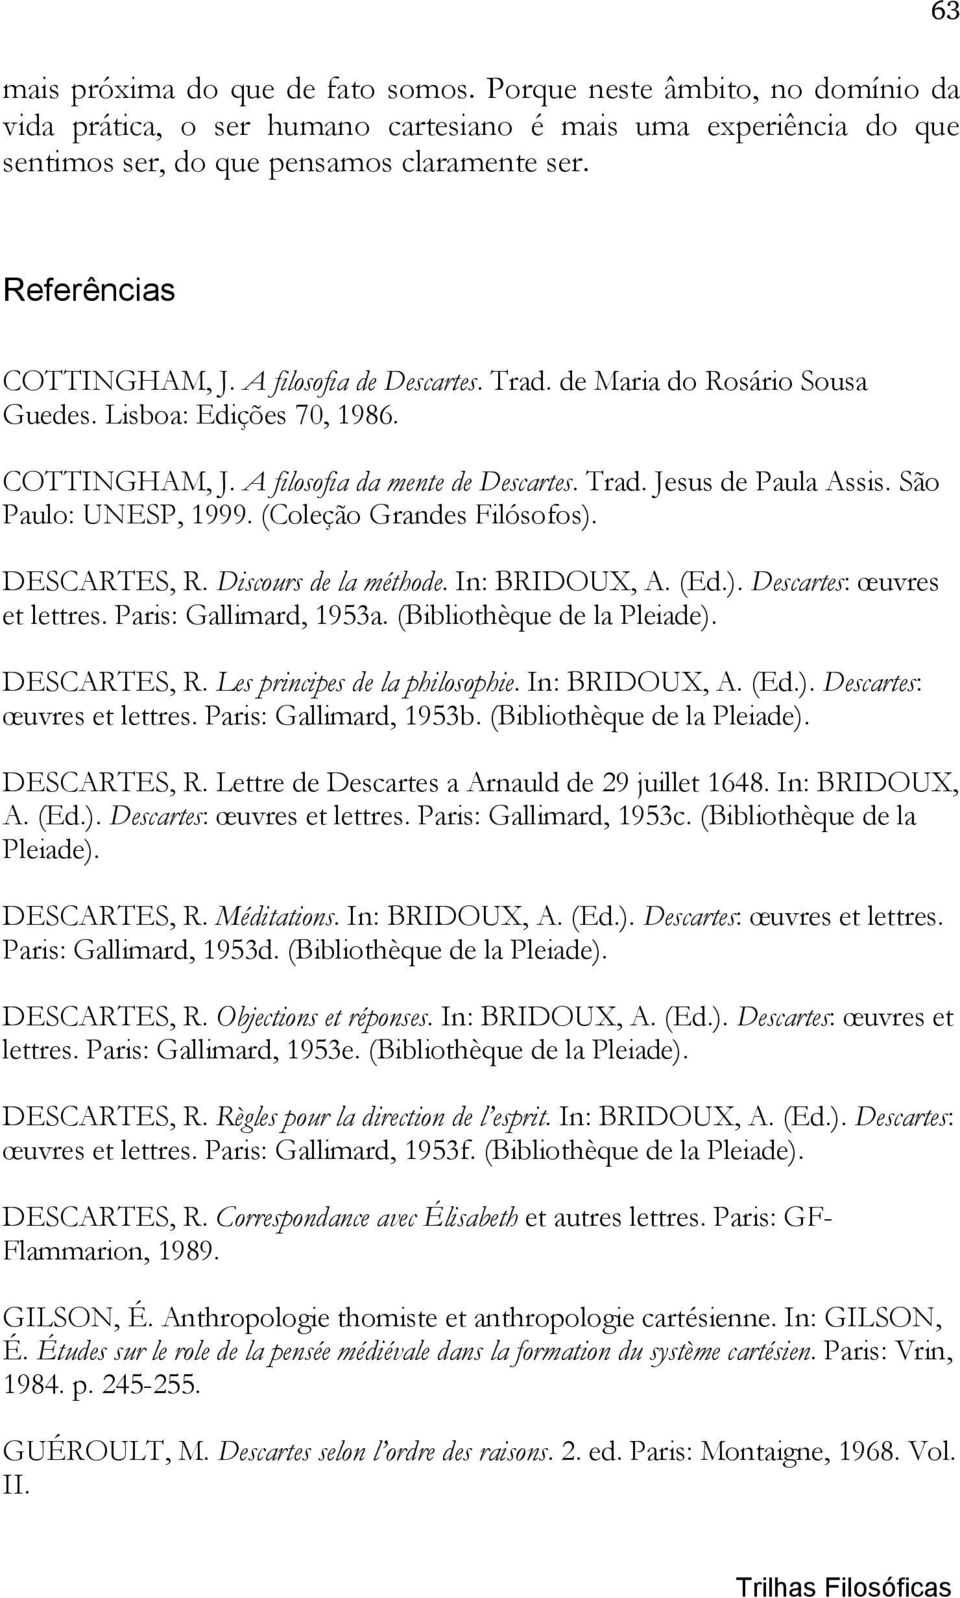 São Paulo: UNESP, 1999. (Coleção Grandes Filósofos). DESCARTES, R. Discours de la méthode. In: BRIDOUX, A. (Ed.). Descartes: œuvres et lettres. Paris: Gallimard, 1953a. (Bibliothèque de la Pleiade).